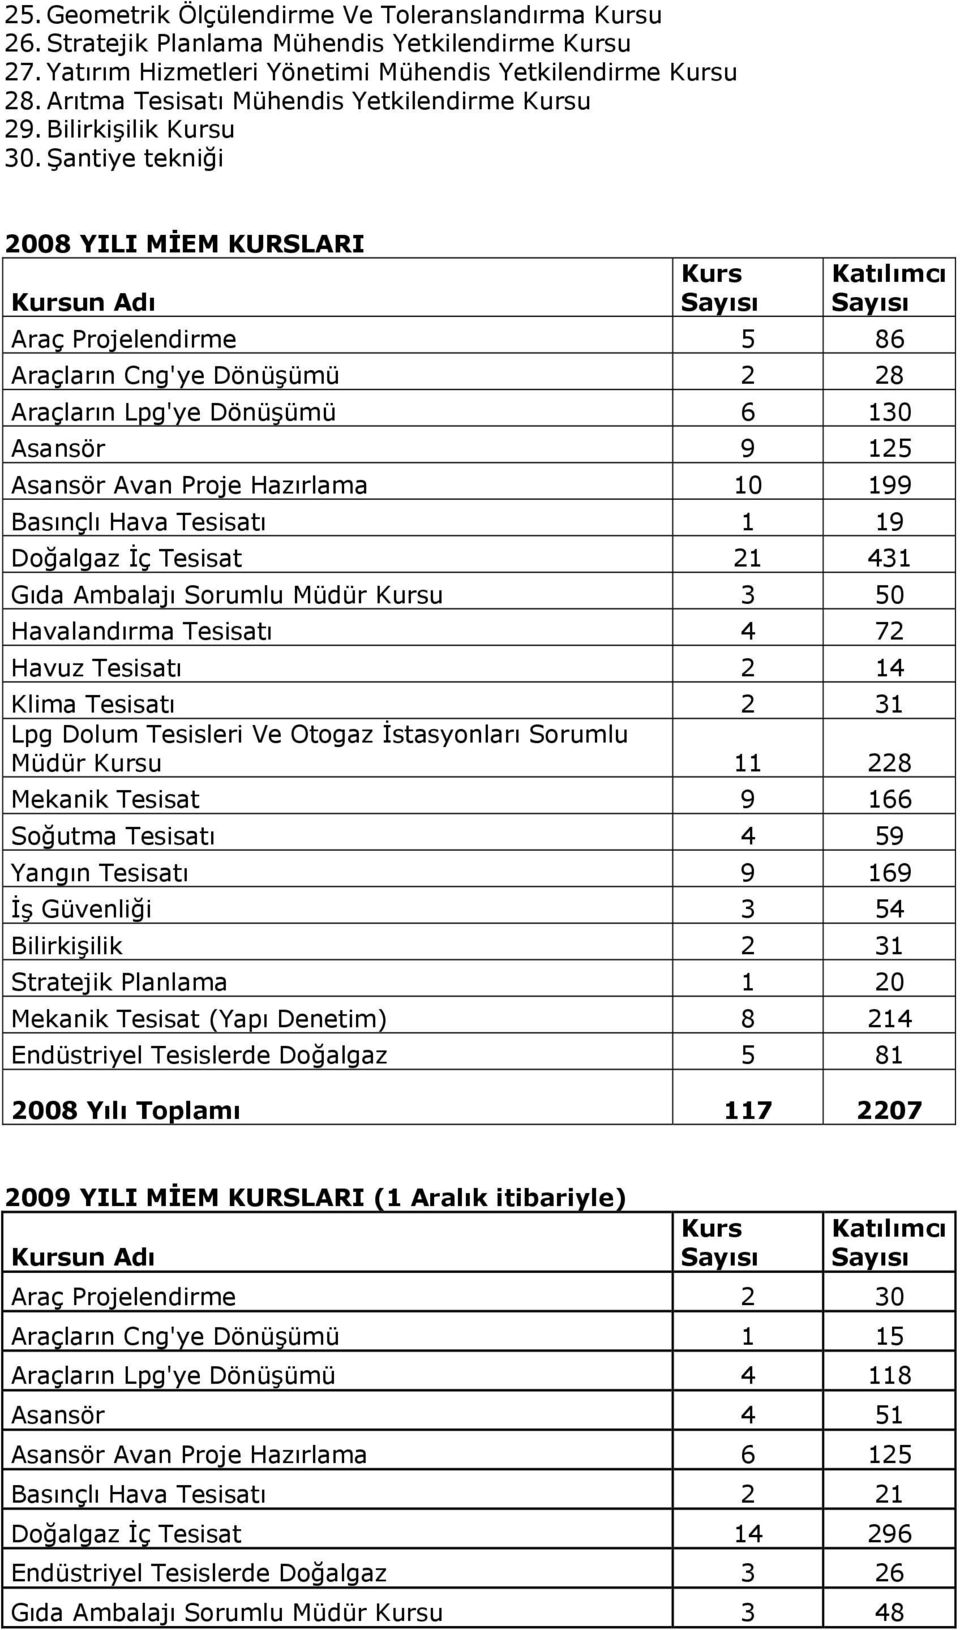 Şantiye tekniği 2008 YILI MİEM KURSLARI Kursun Adı Kurs Katılımcı Araç Projelendirme 5 86 Araçların Cng'ye Dönüşümü 2 28 Araçların Lpg'ye Dönüşümü 6 130 Asansör 9 125 Asansör Avan Proje Hazırlama 10